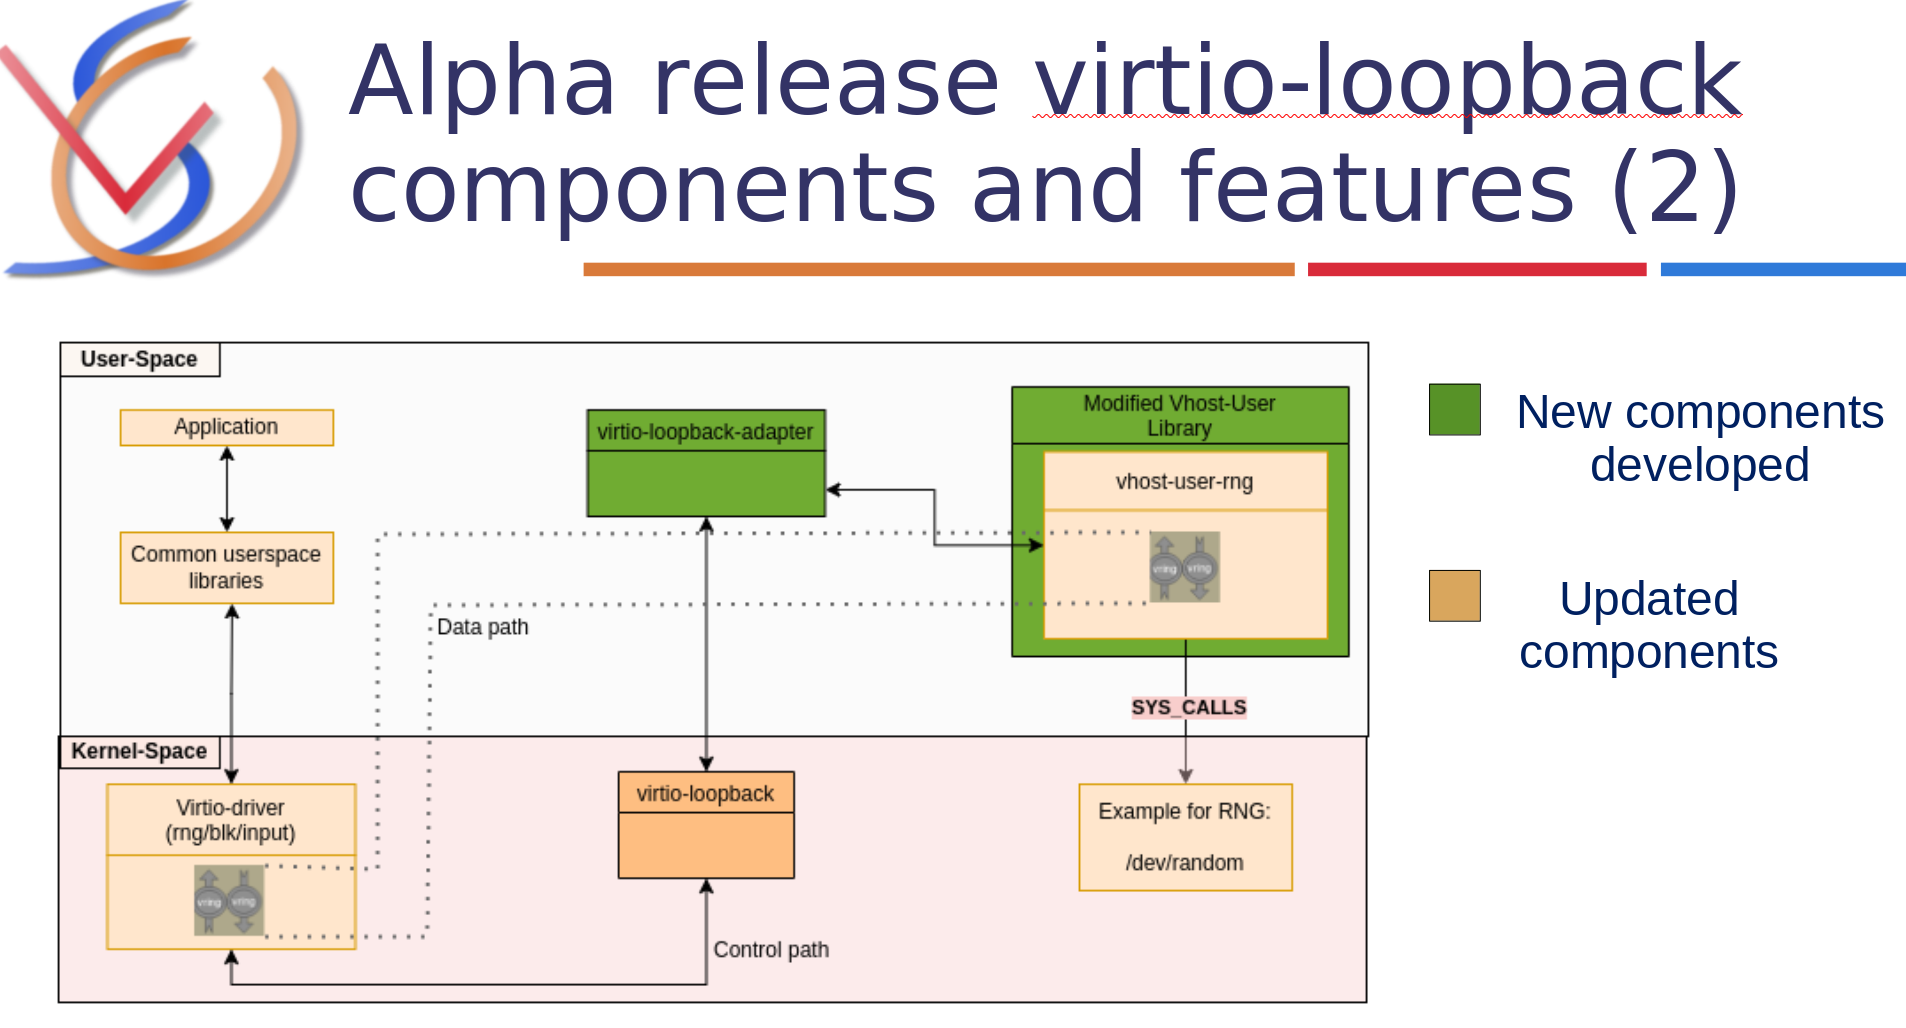 virtio-loopback implémente la portabilité complète des applications virtio entre les systèmes natifs et les hyperviseurs